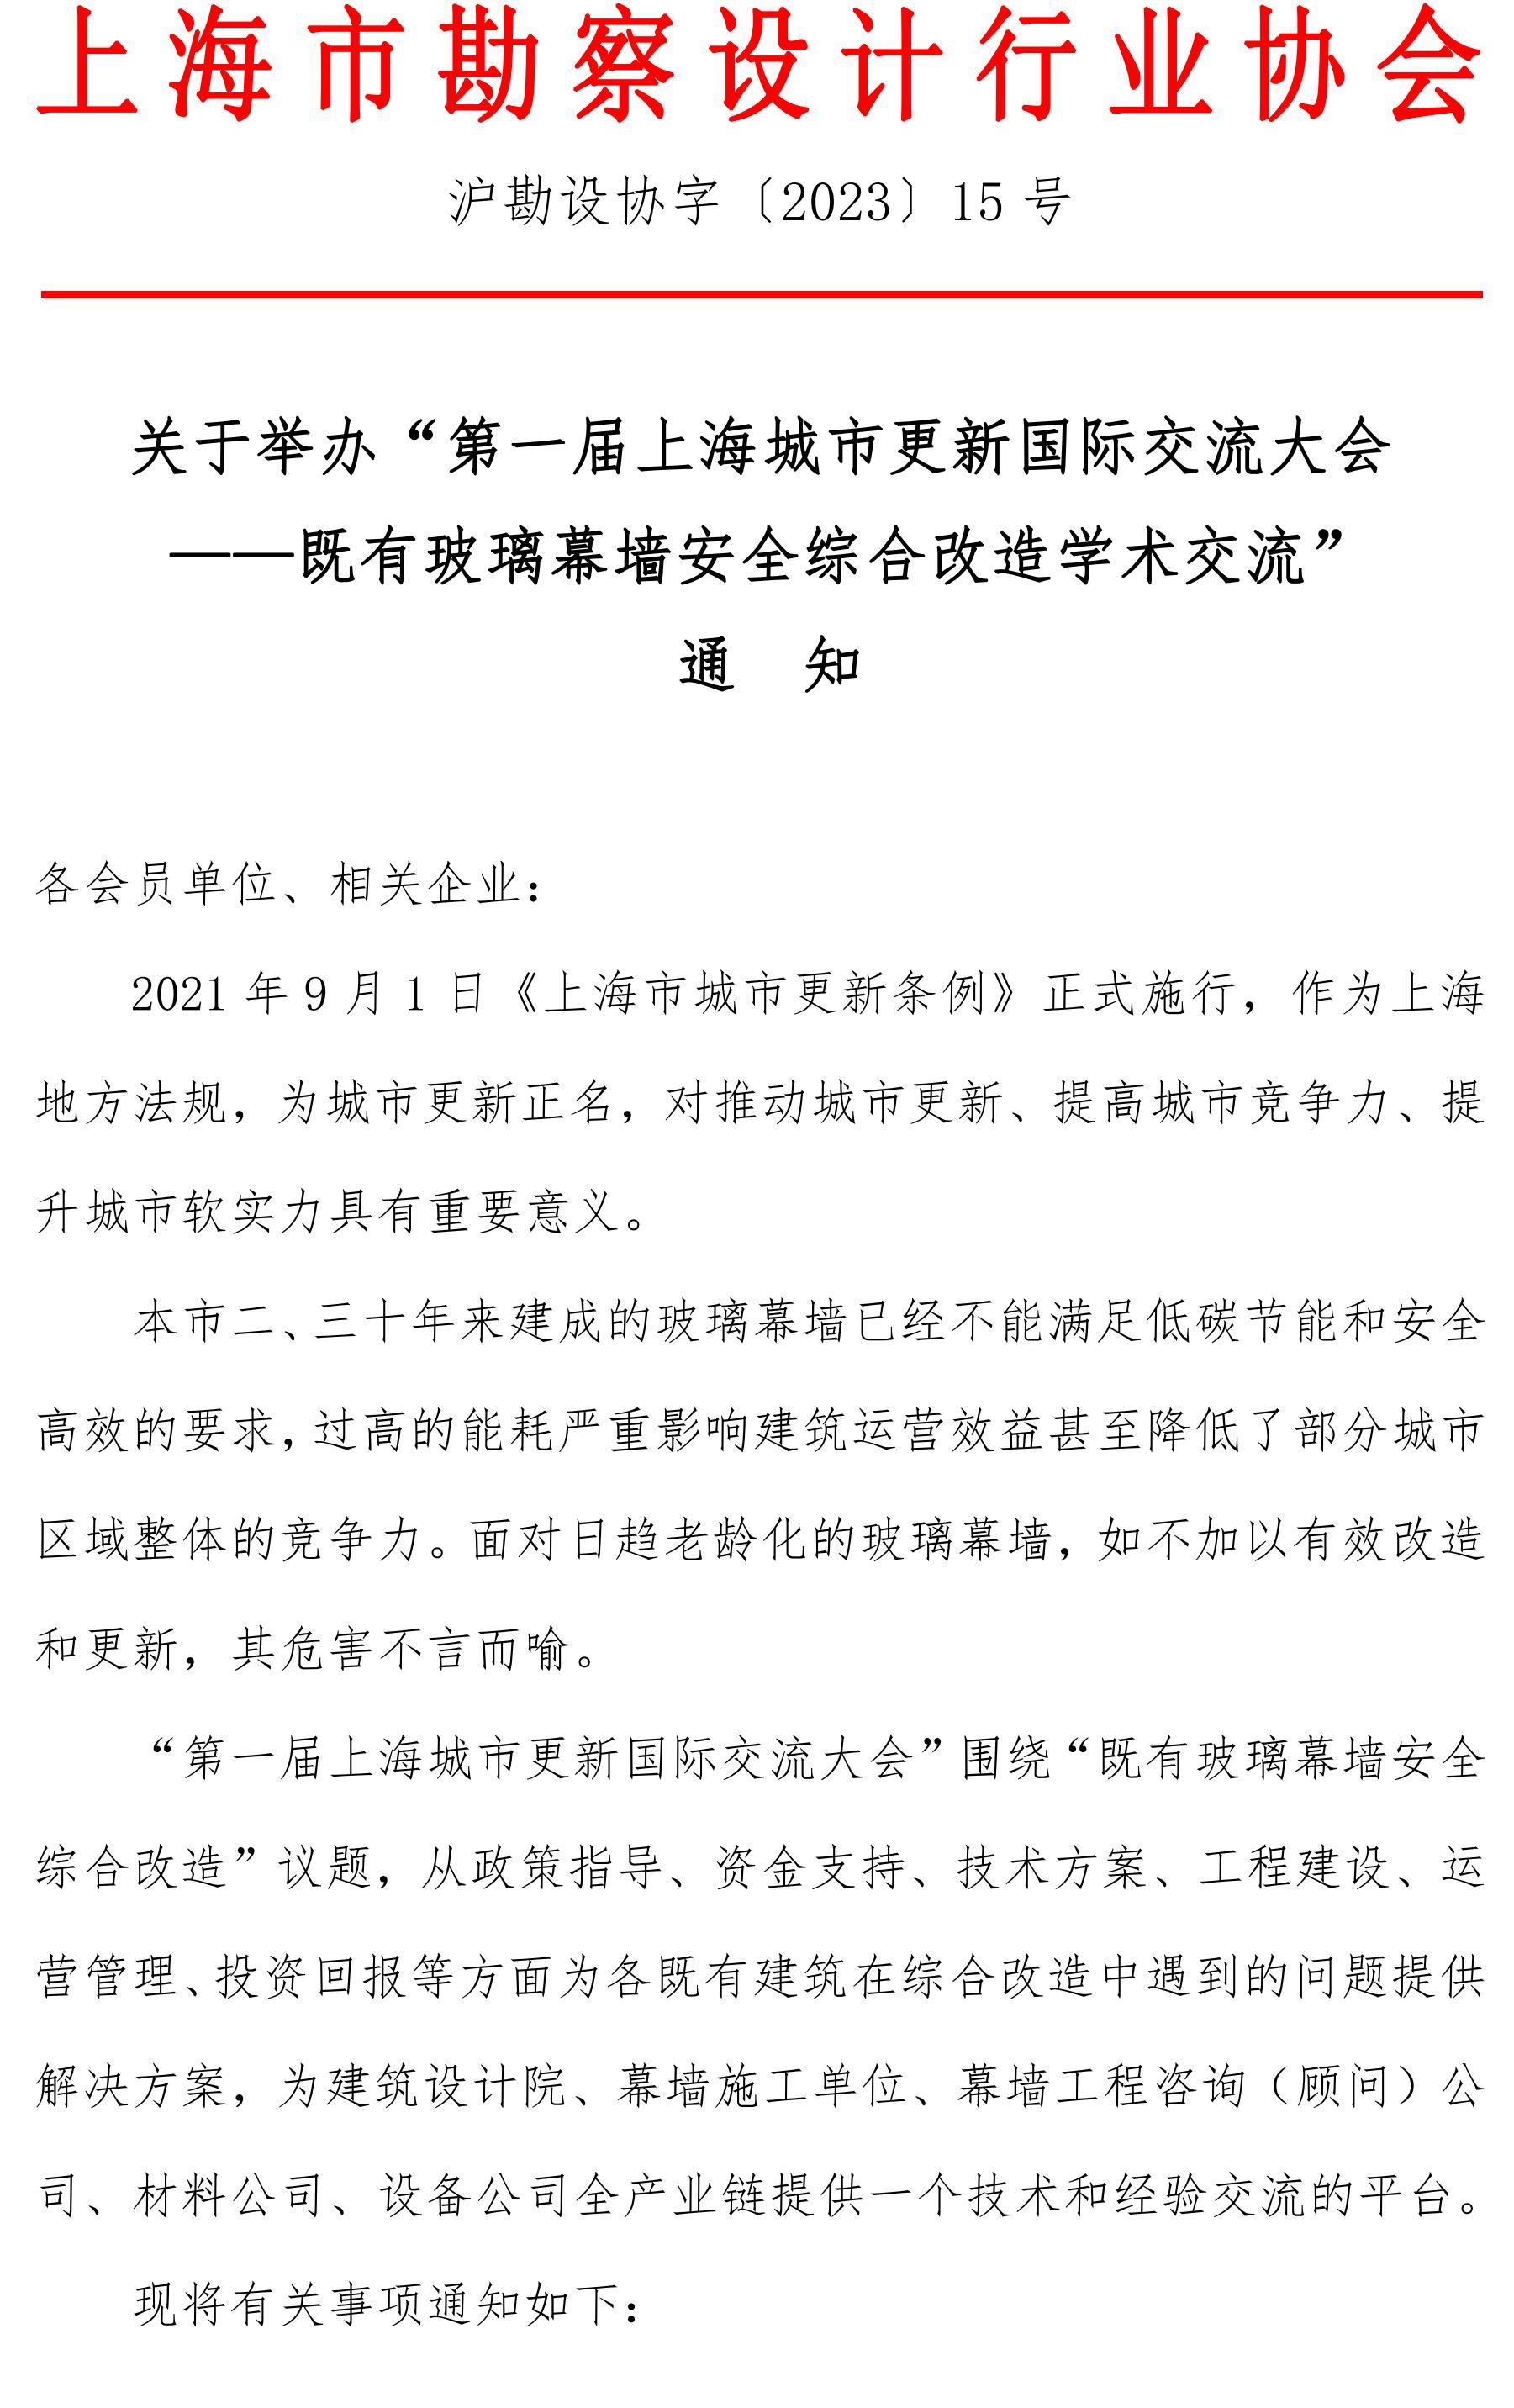 关于举办第一届上海城市更新国际论坛——既有玻璃幕墙安全综合改造高峰论坛_00.jpg